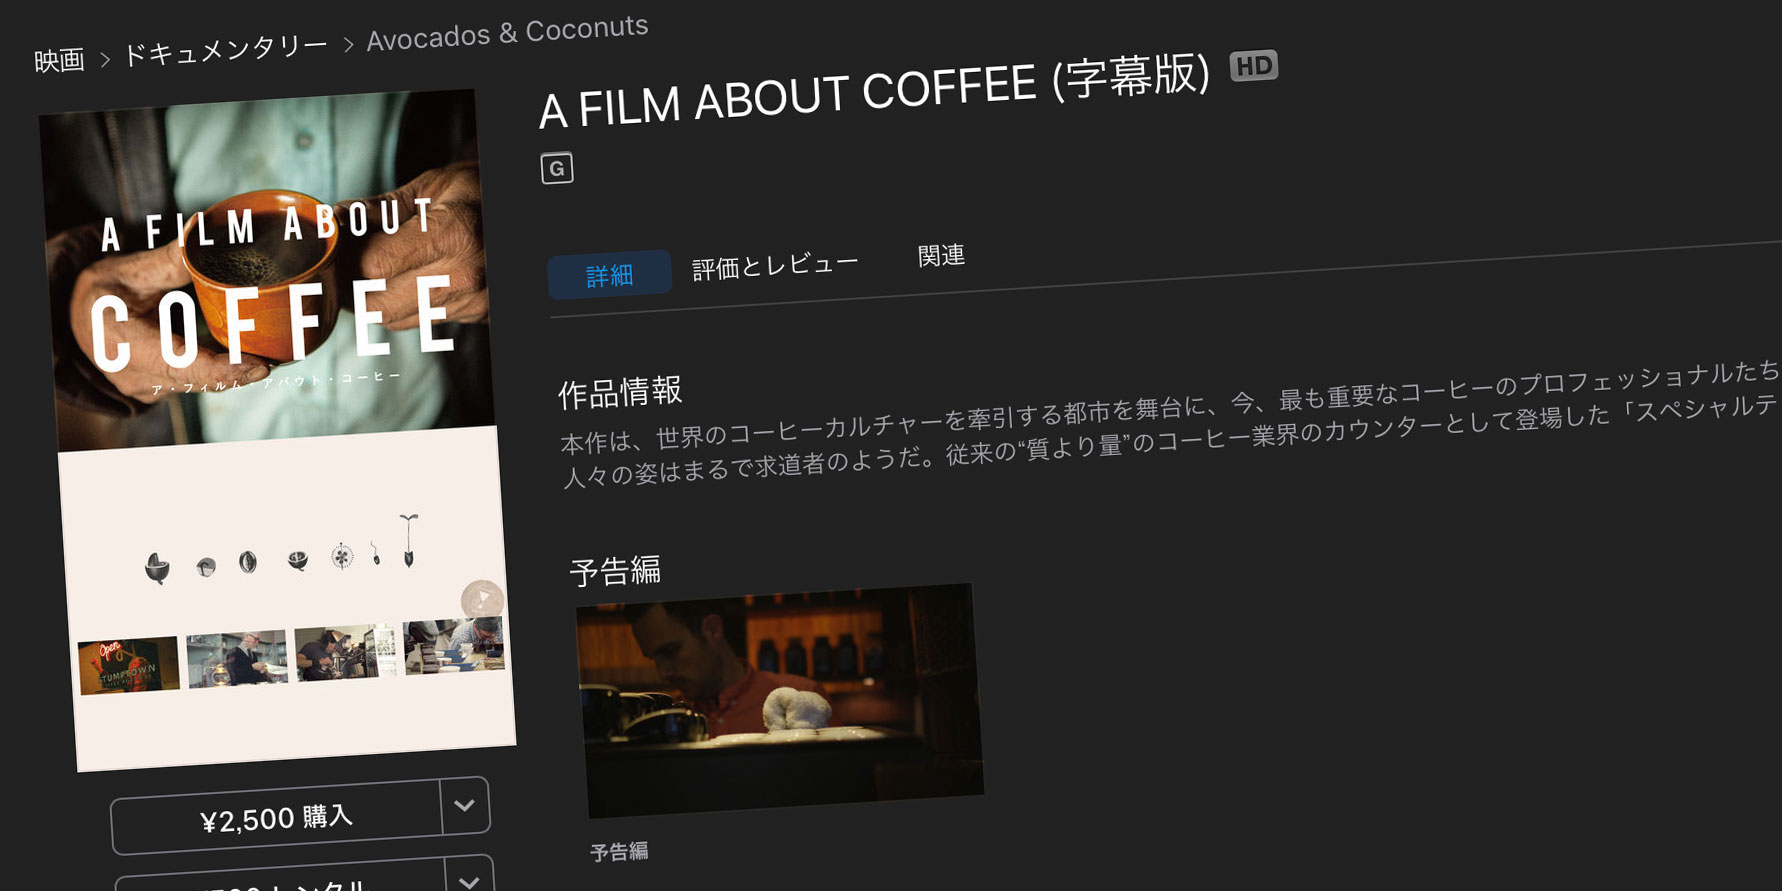 その一杯がきっと至福になる。コーヒー好きならみて損はない、「A FILM ABOUT COFFEE」